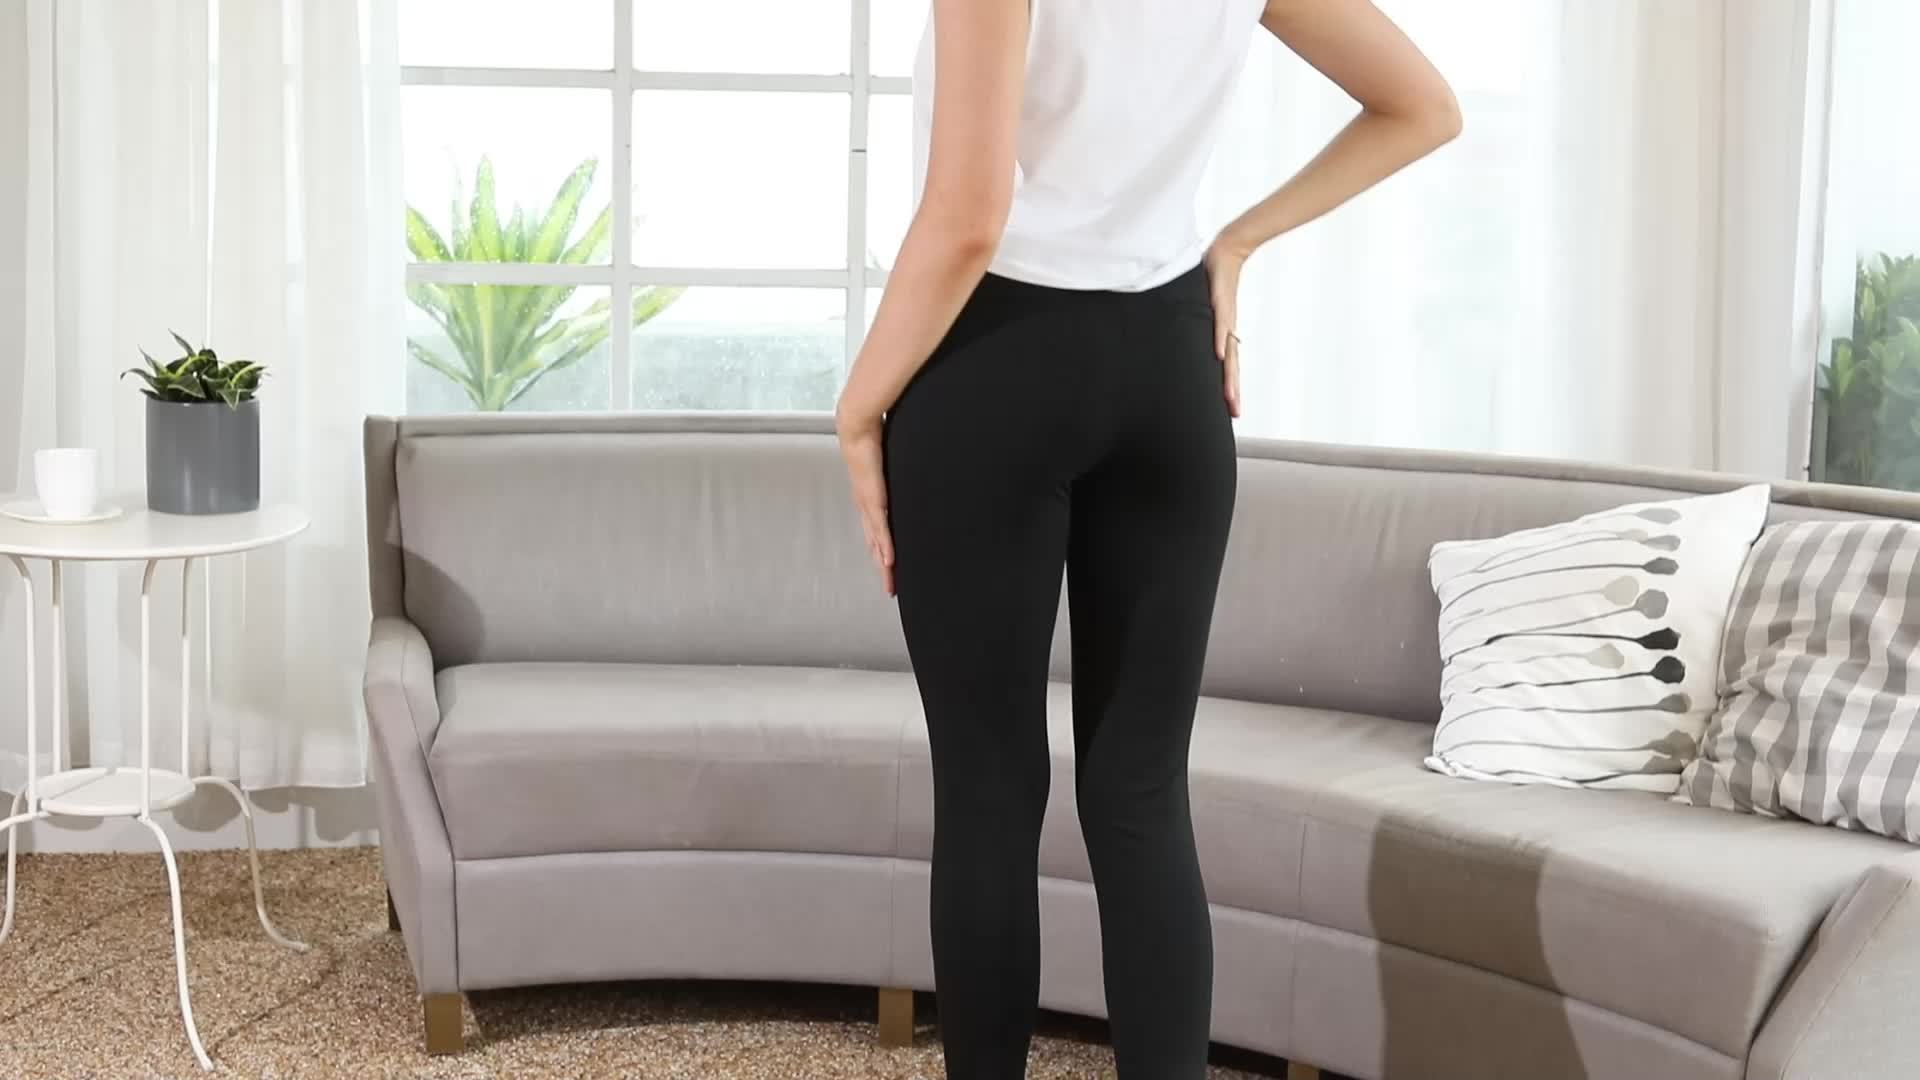 Pantalones de trabajo recortados de cintura alta para mujer